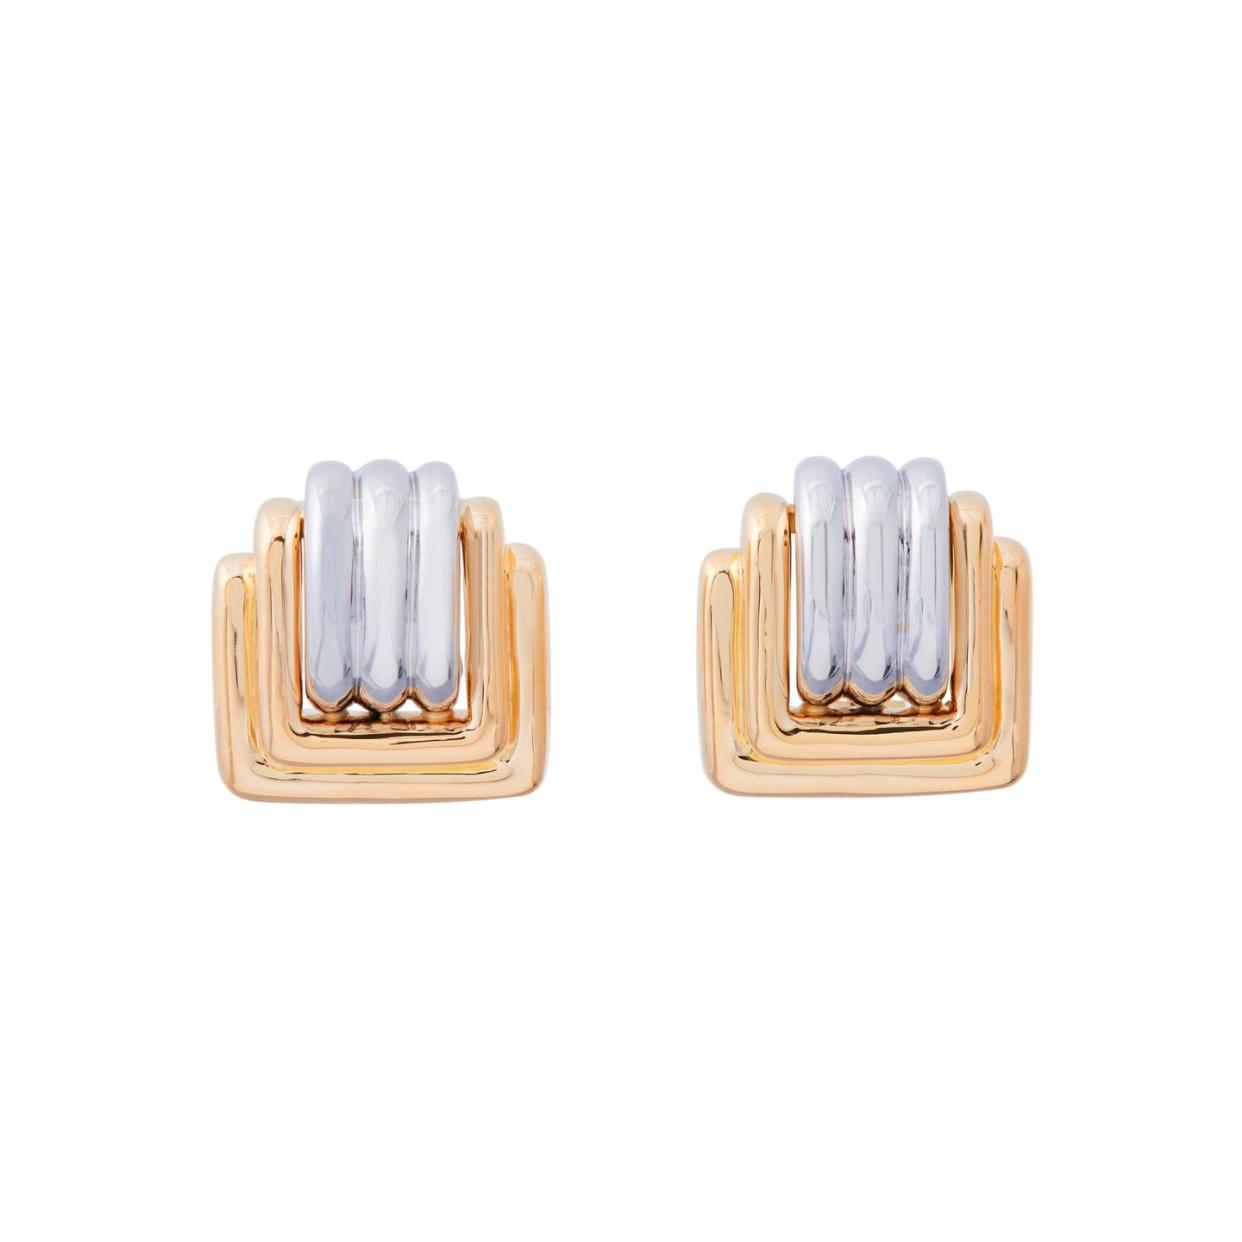 sidney garber square earrings